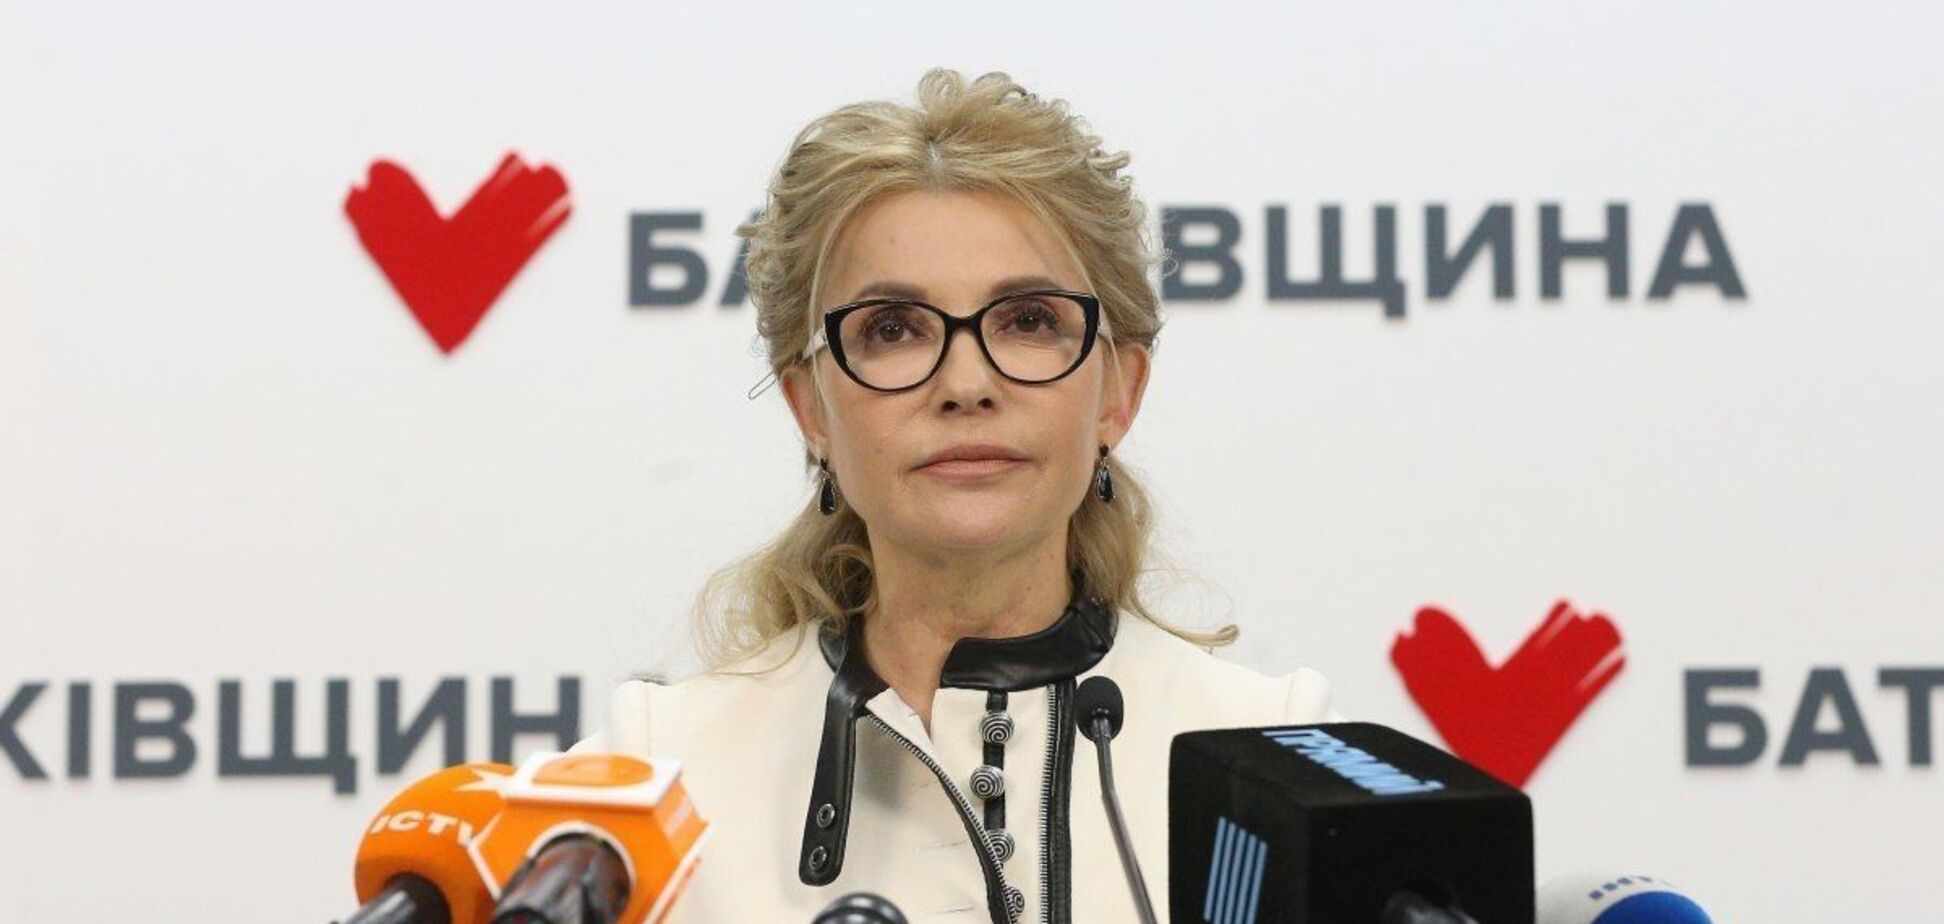 'Батьківщина' Тимошенко має підтримку людей, програму дій та шанси очолити коаліцію в новій Раді, - РБК